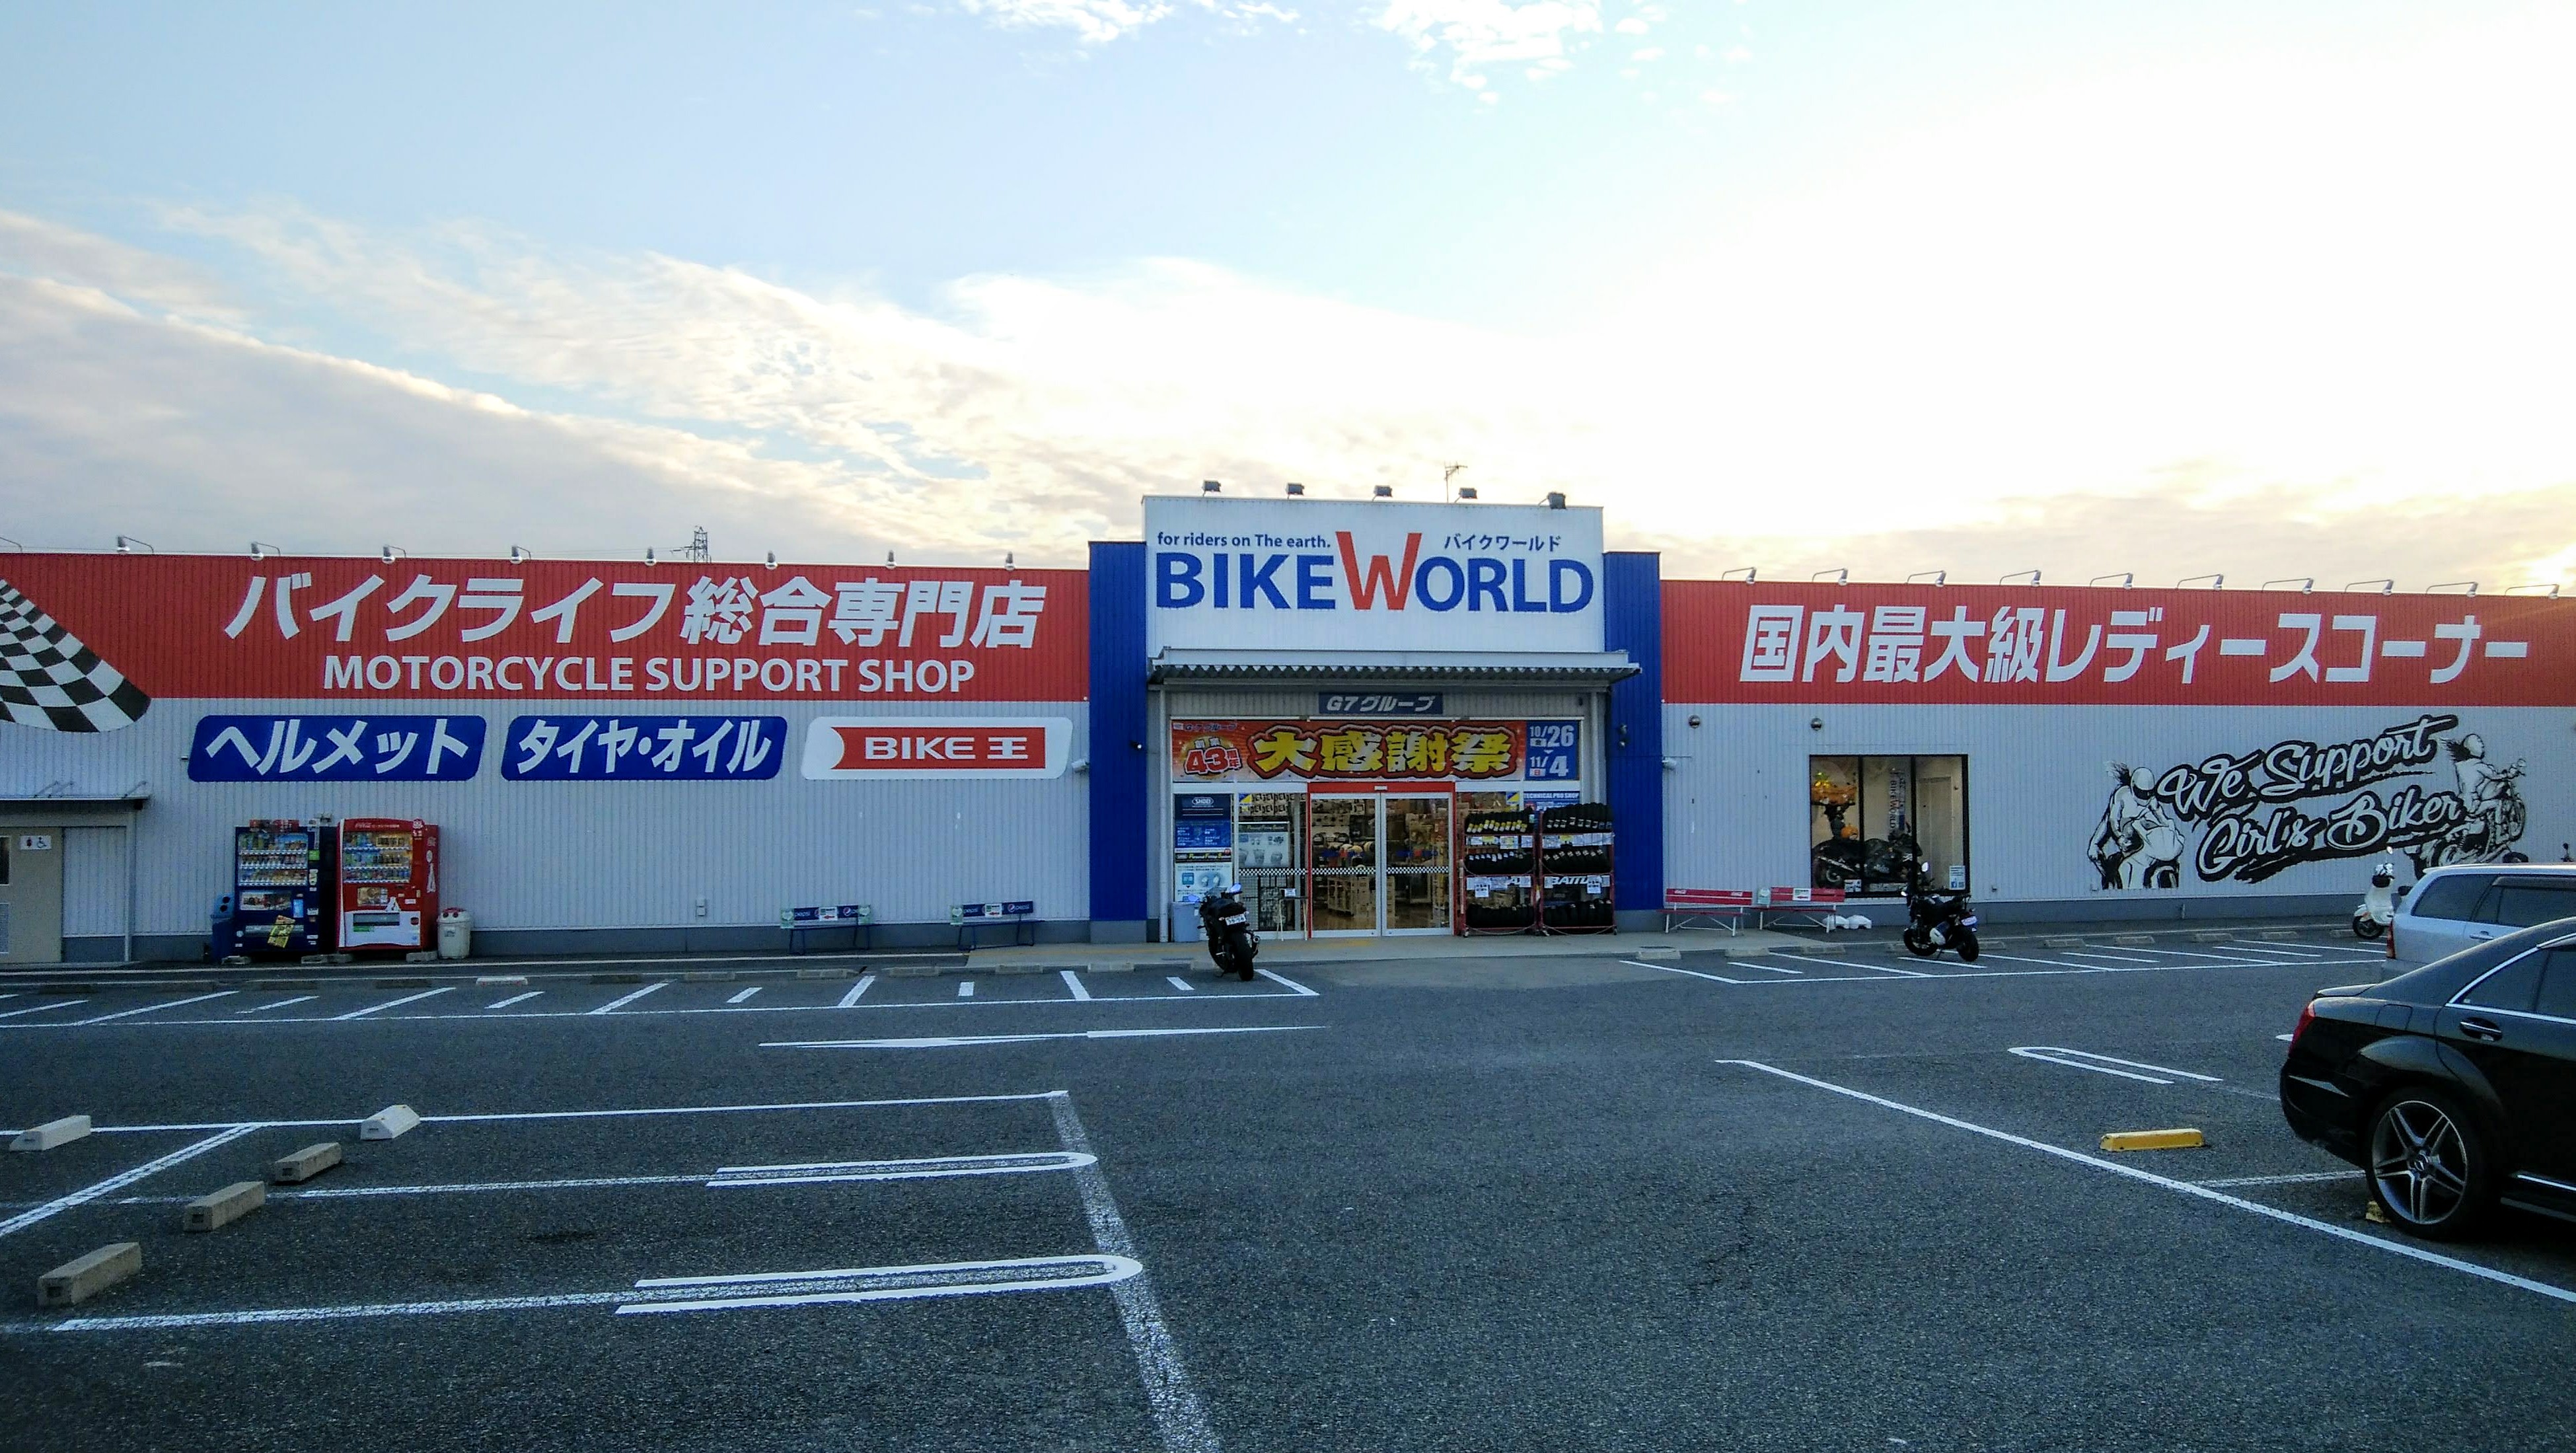 バイク王神戸伊川谷店、バイクワールド伊川谷店